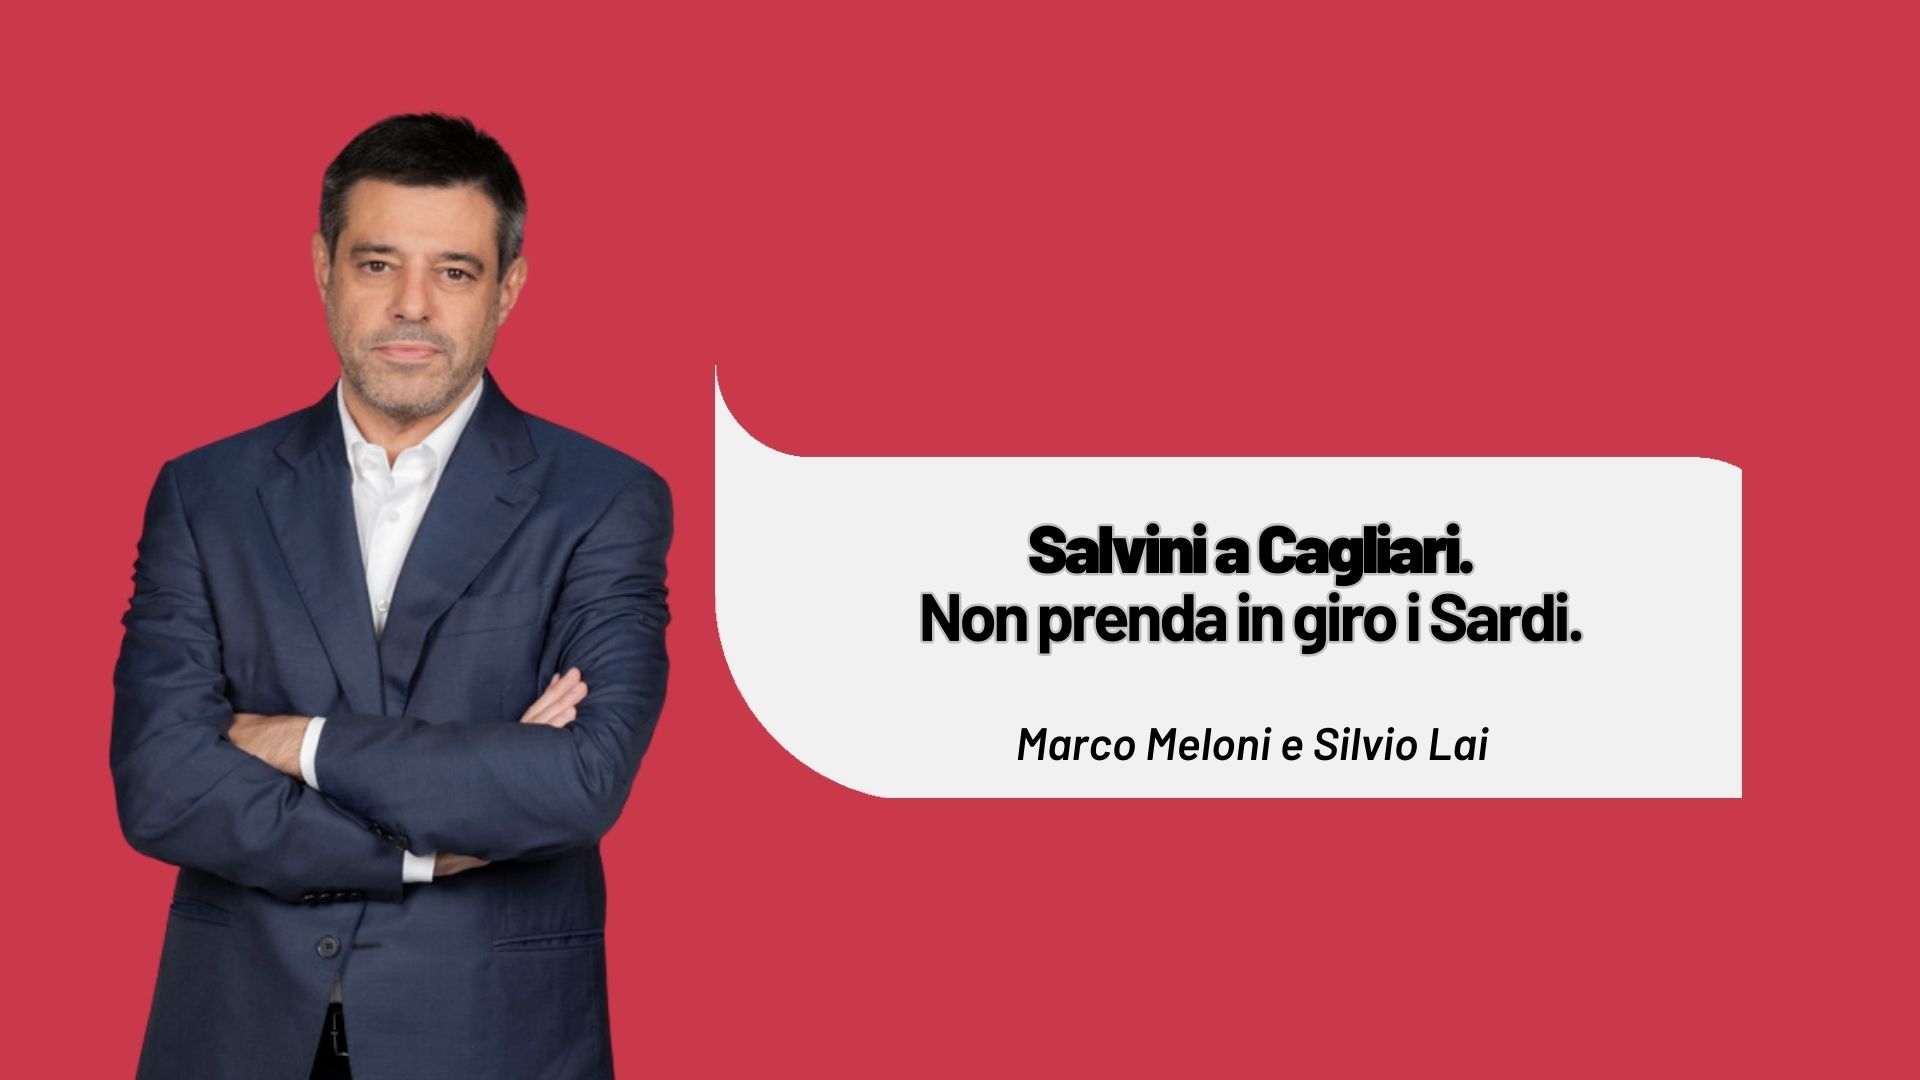 Salvini a Cagliari. Parli dei tagli ai fondi per il Sud e del DDL Calderoli che condanna la Sardegna. Non prenda in giro i Sardi.